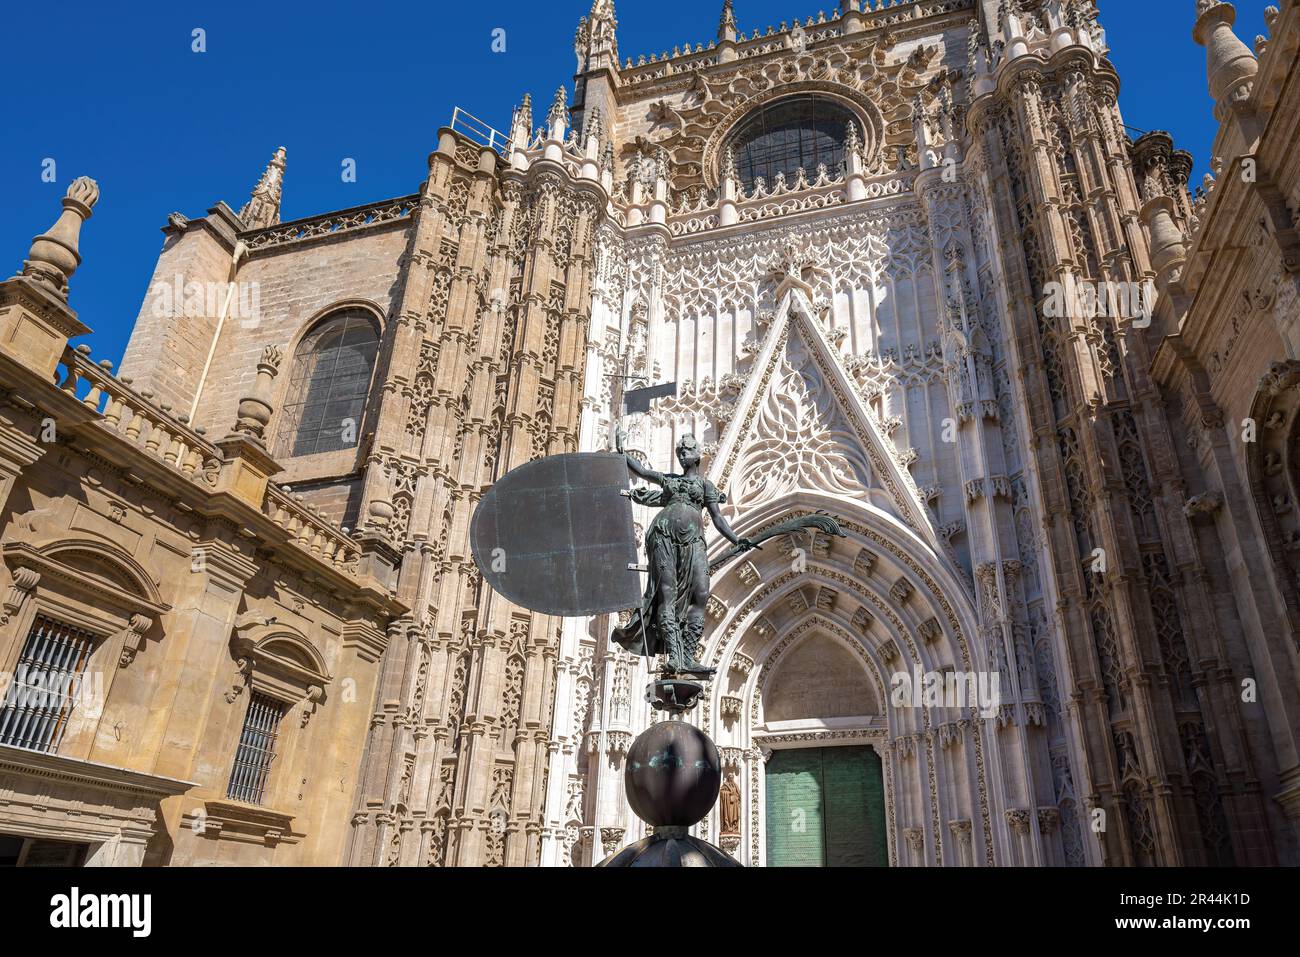 Nachbildung der Statue El Giraldillo - Wetterfahne auf dem Turm der Kathedrale und der Tür des Heiligen Michael (Puerta de San Miguel) - Sevilla, Spanien Stockfoto